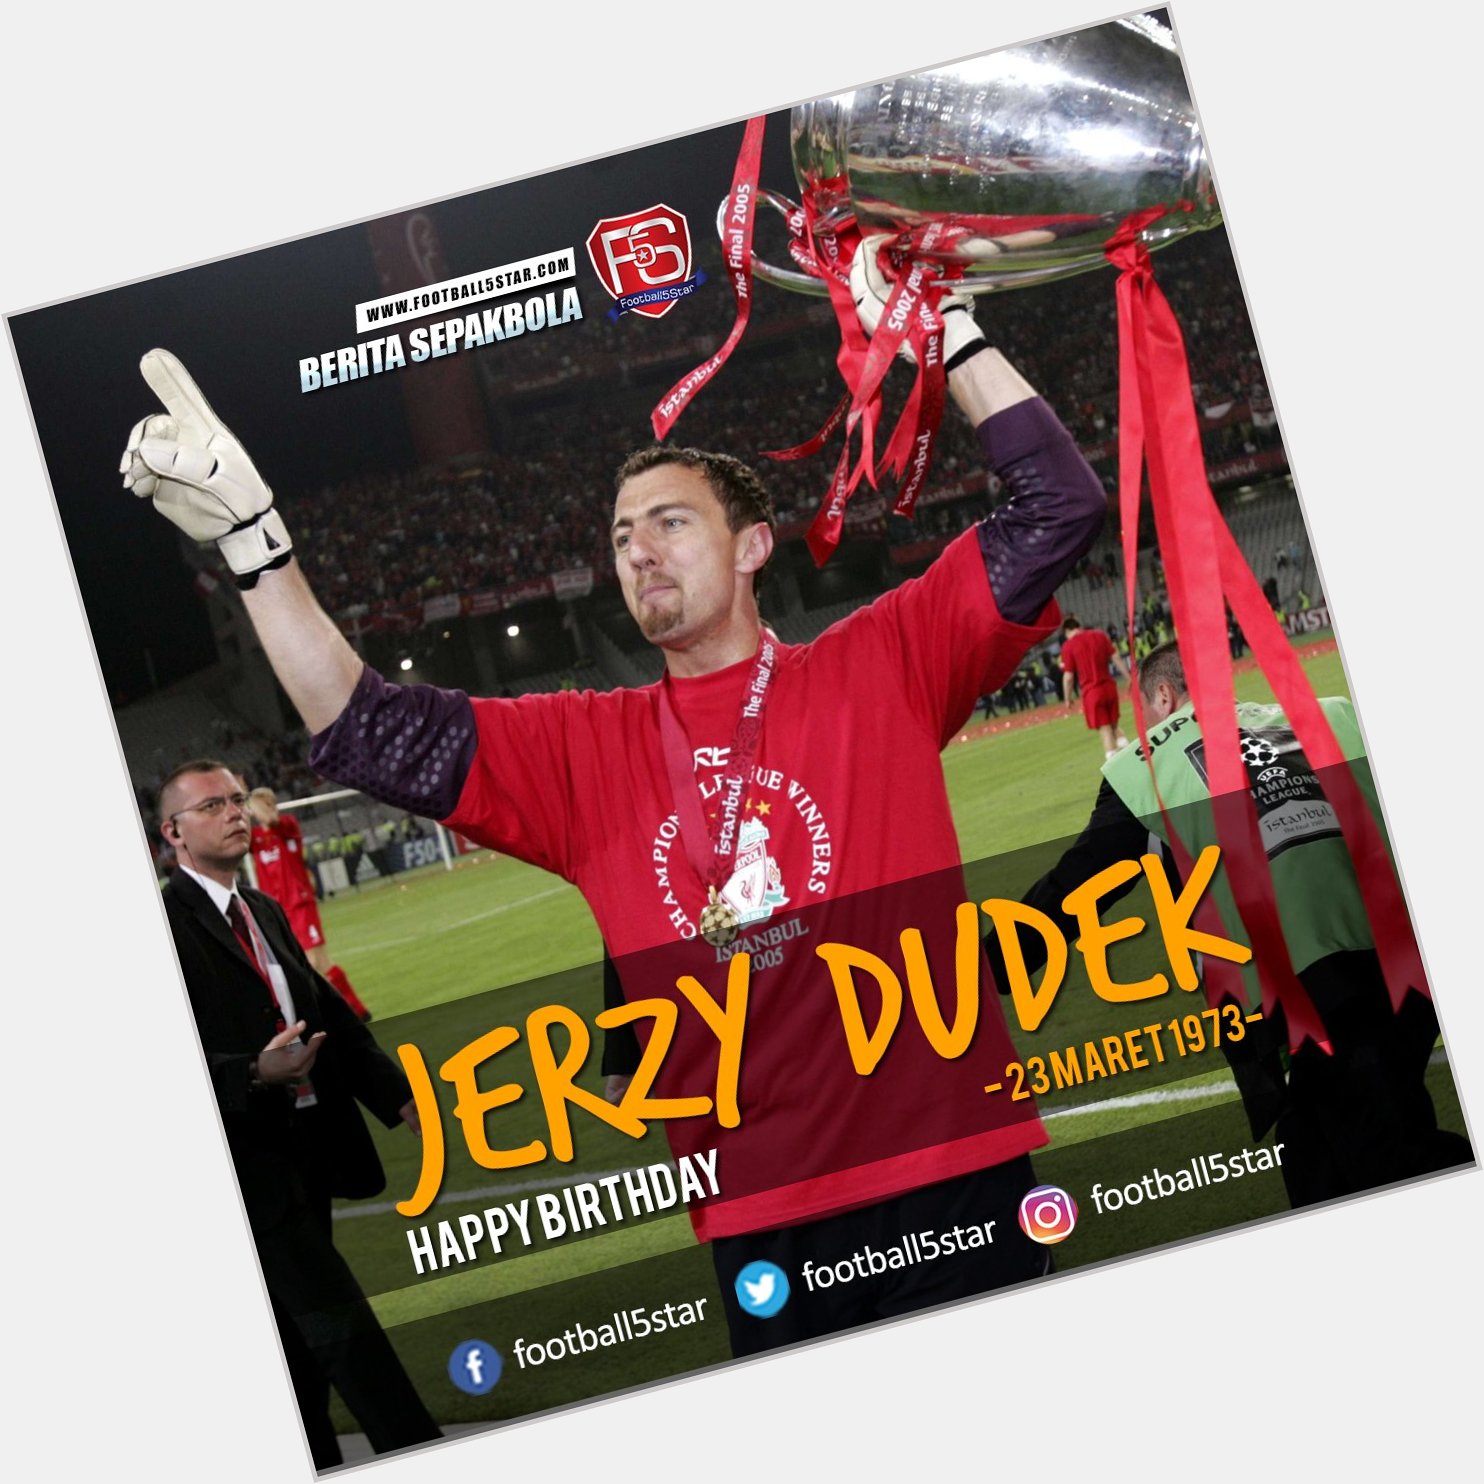 Kalian masih ingat dengan Jerzy Dudek guys? hari ini dia berulang tahun, Happy Birthday Jerzy Dudek 23 Maret1973 